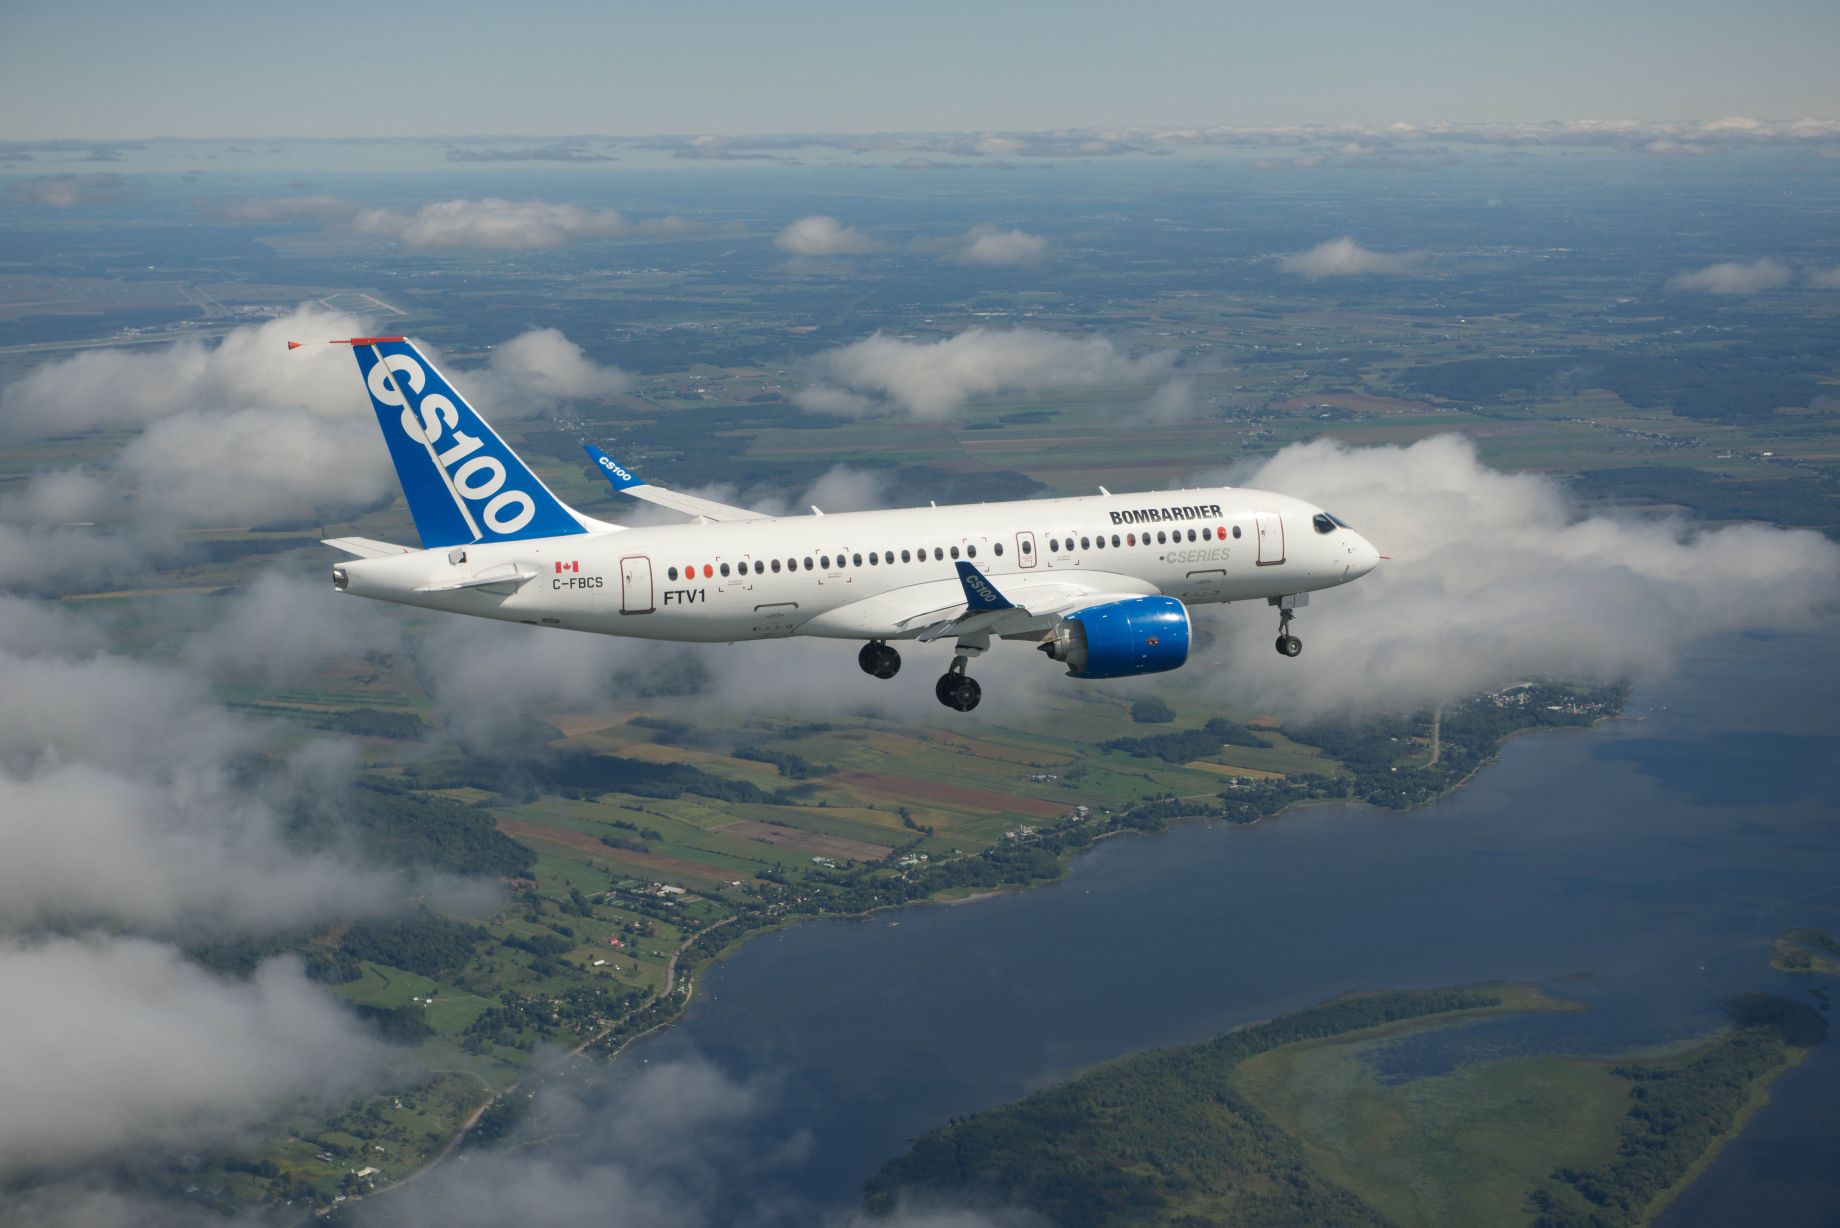 A Bombardier szép légifelvételei az első repülésen készültek